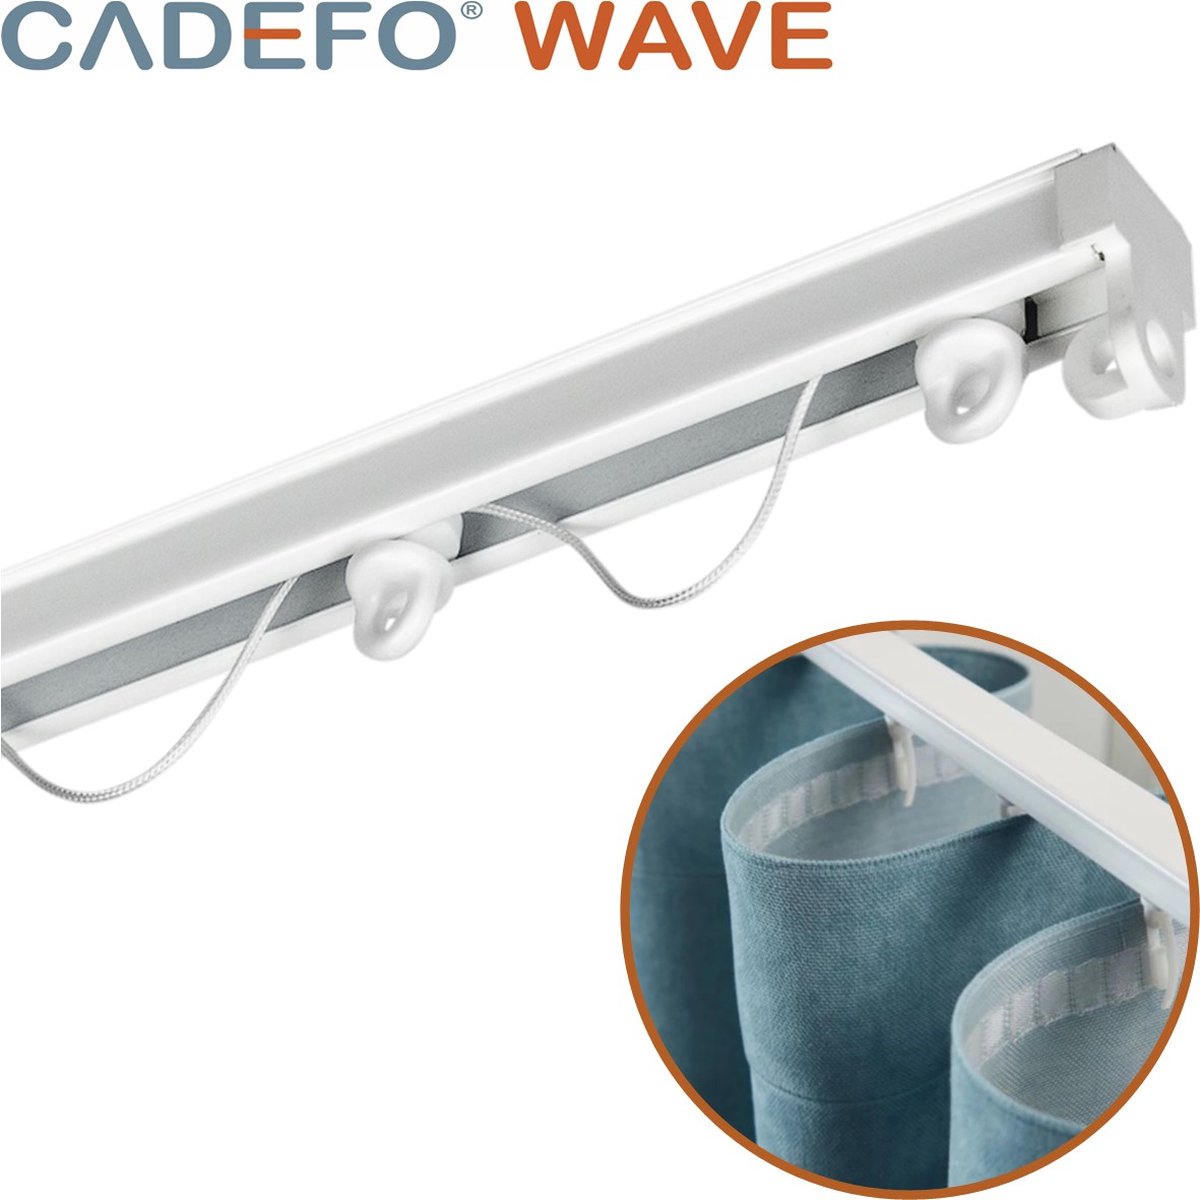 CADEFO WAVE (451 - 500 cm) Gordijnrails - Compleet op maat! - UIT 1 STUK - Leverbaar tot 6 meter - Plafondbevestiging - Lengte 462 cm